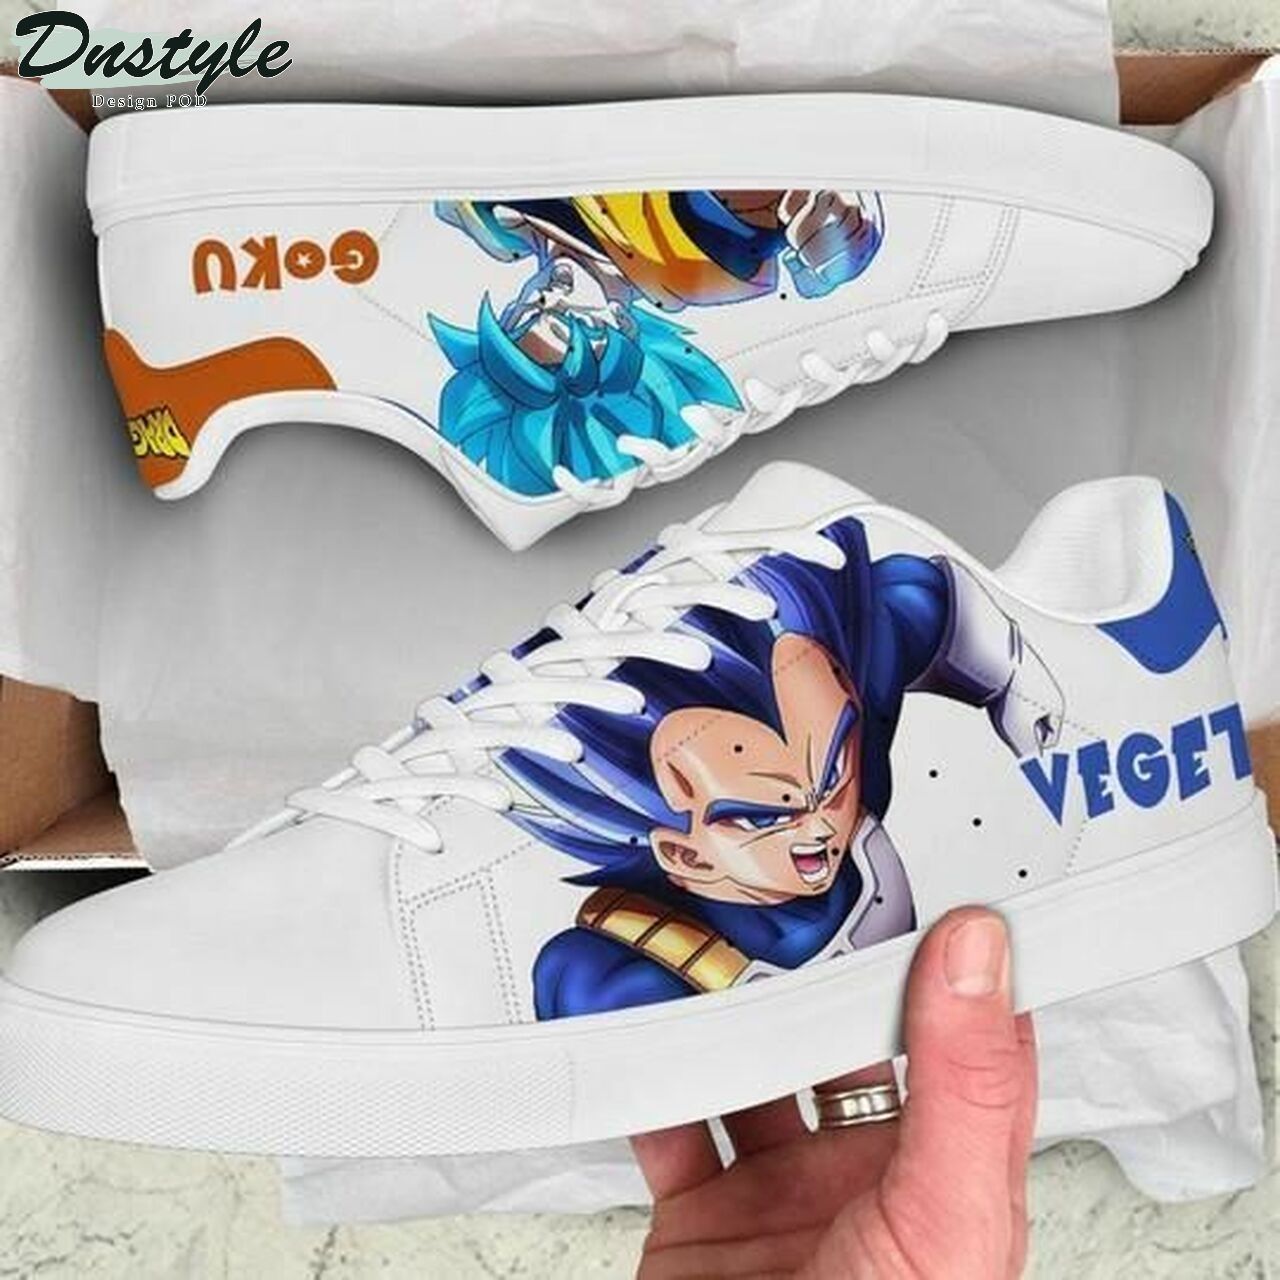 Goku and vegeta dragon ball stan smith low top skate shoes